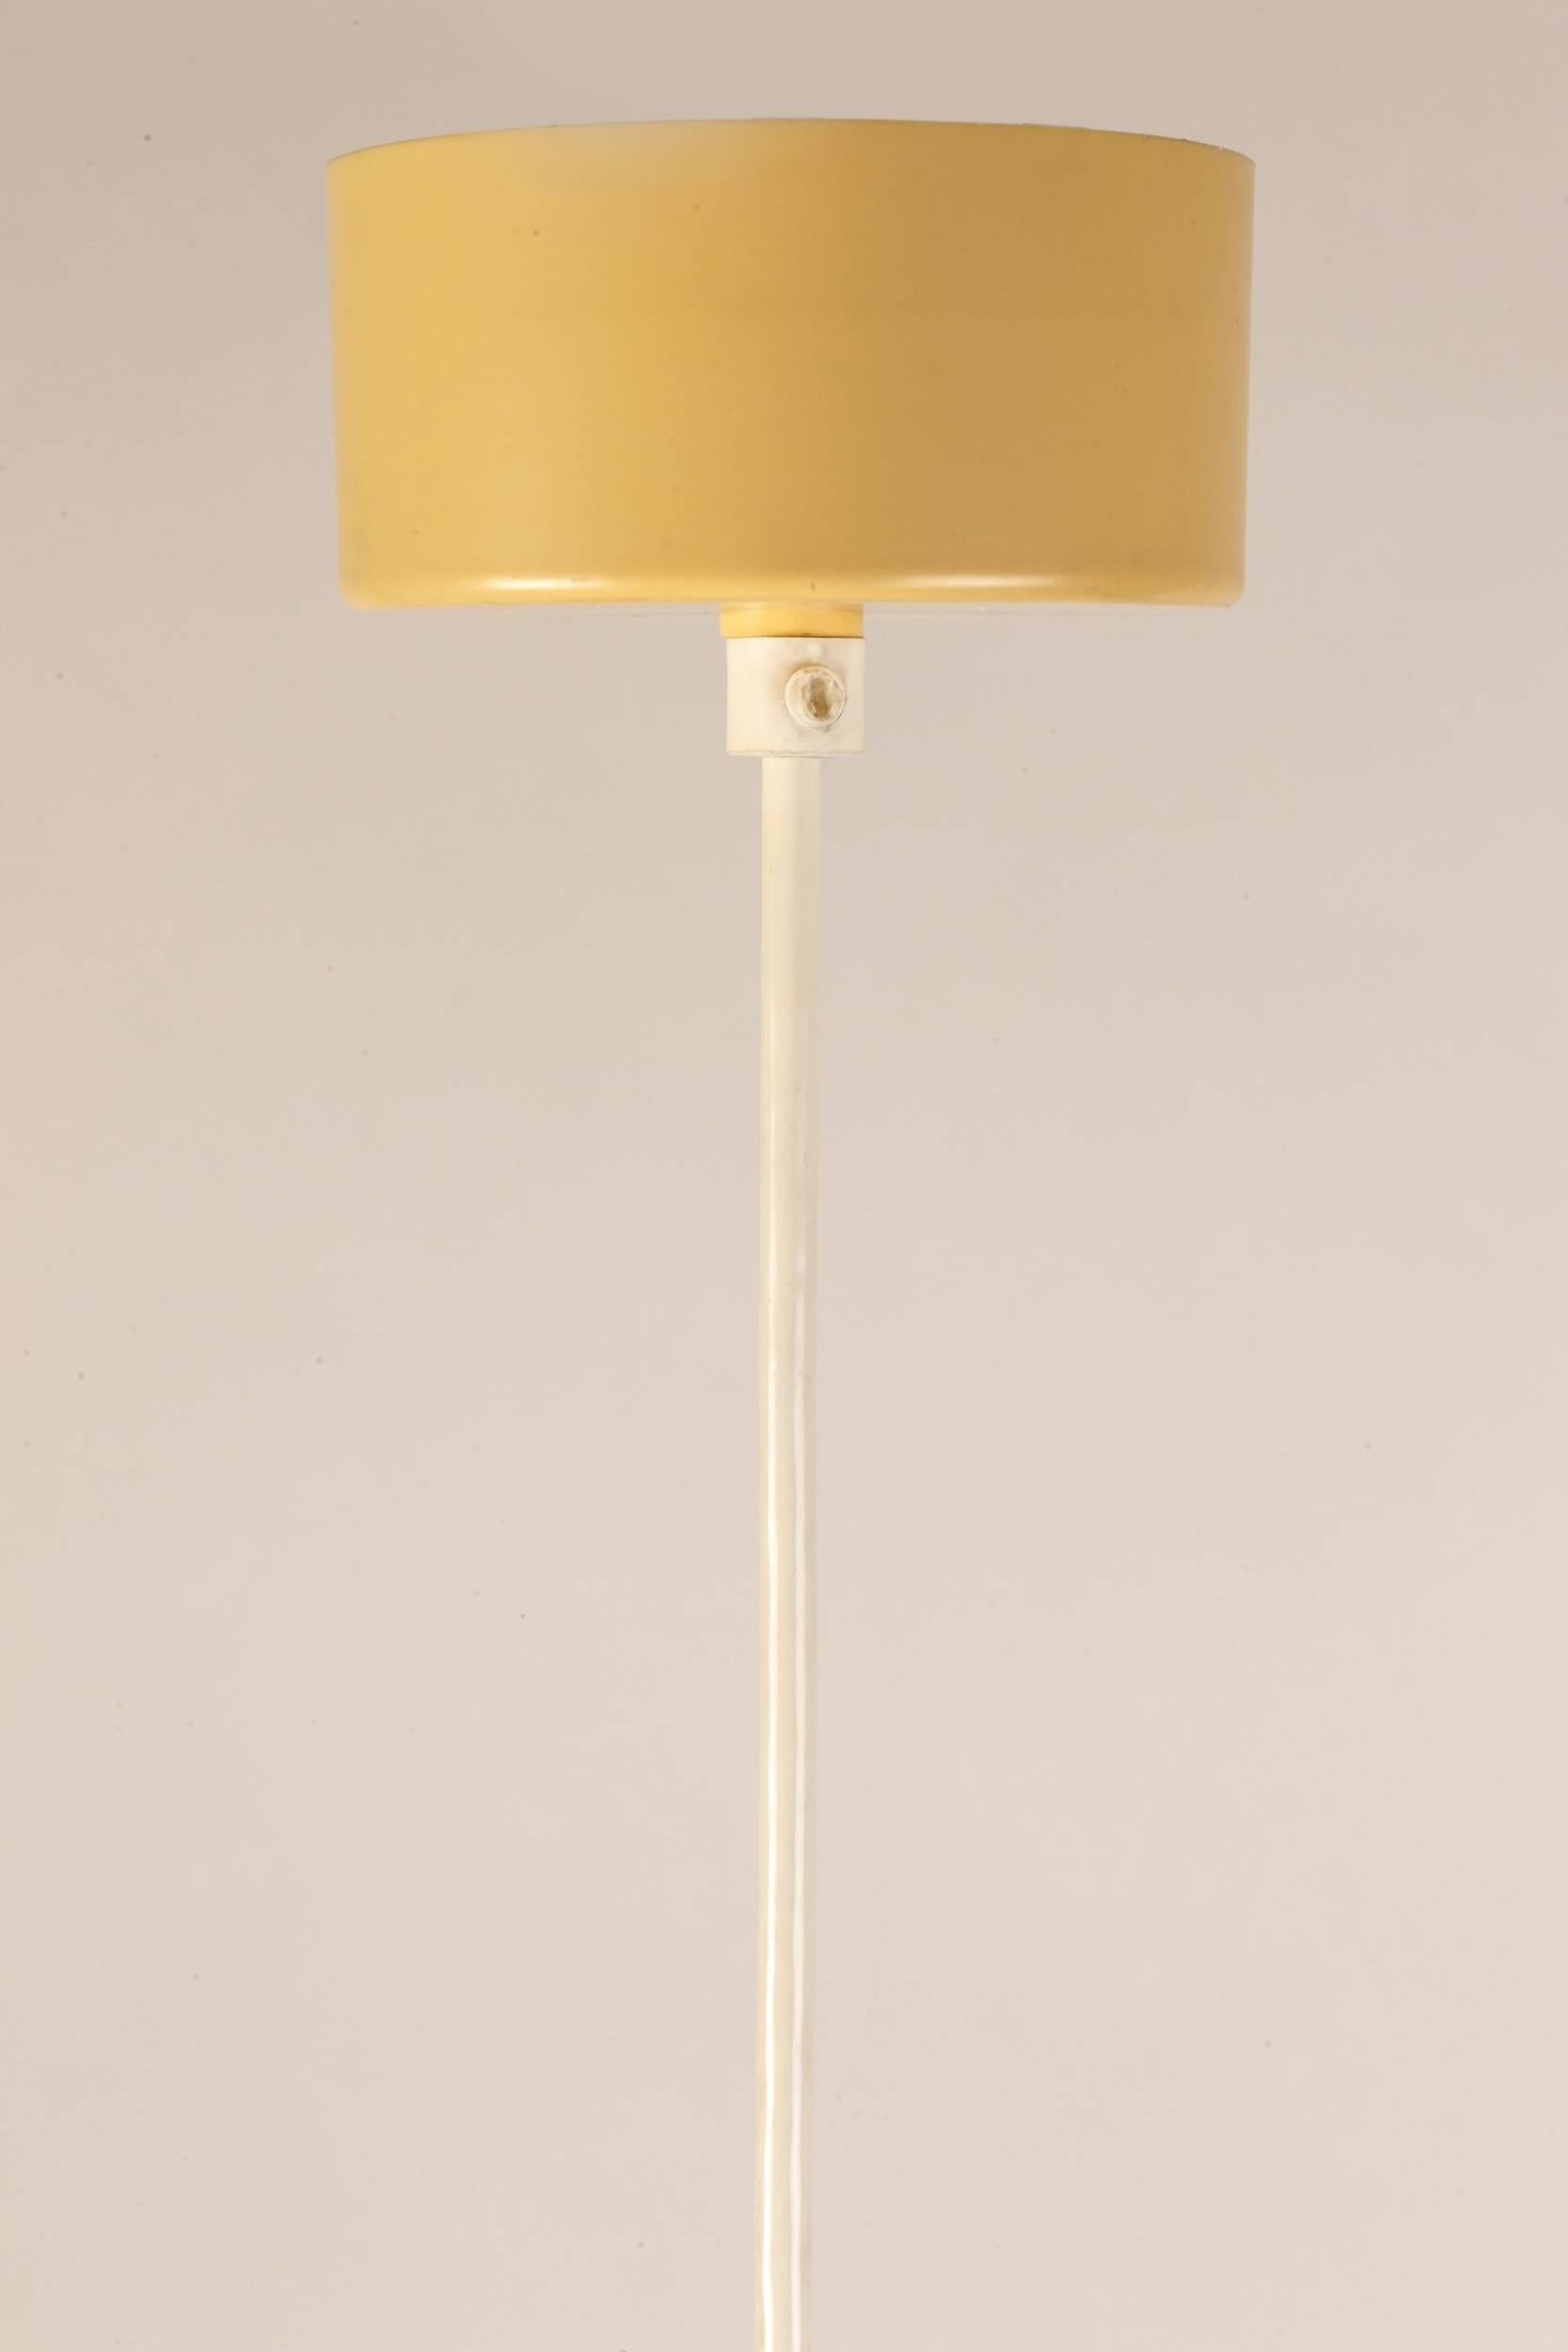 Metal Shell Plate Pendant Lamp by Verner Panton, Fun 1DM, 1964